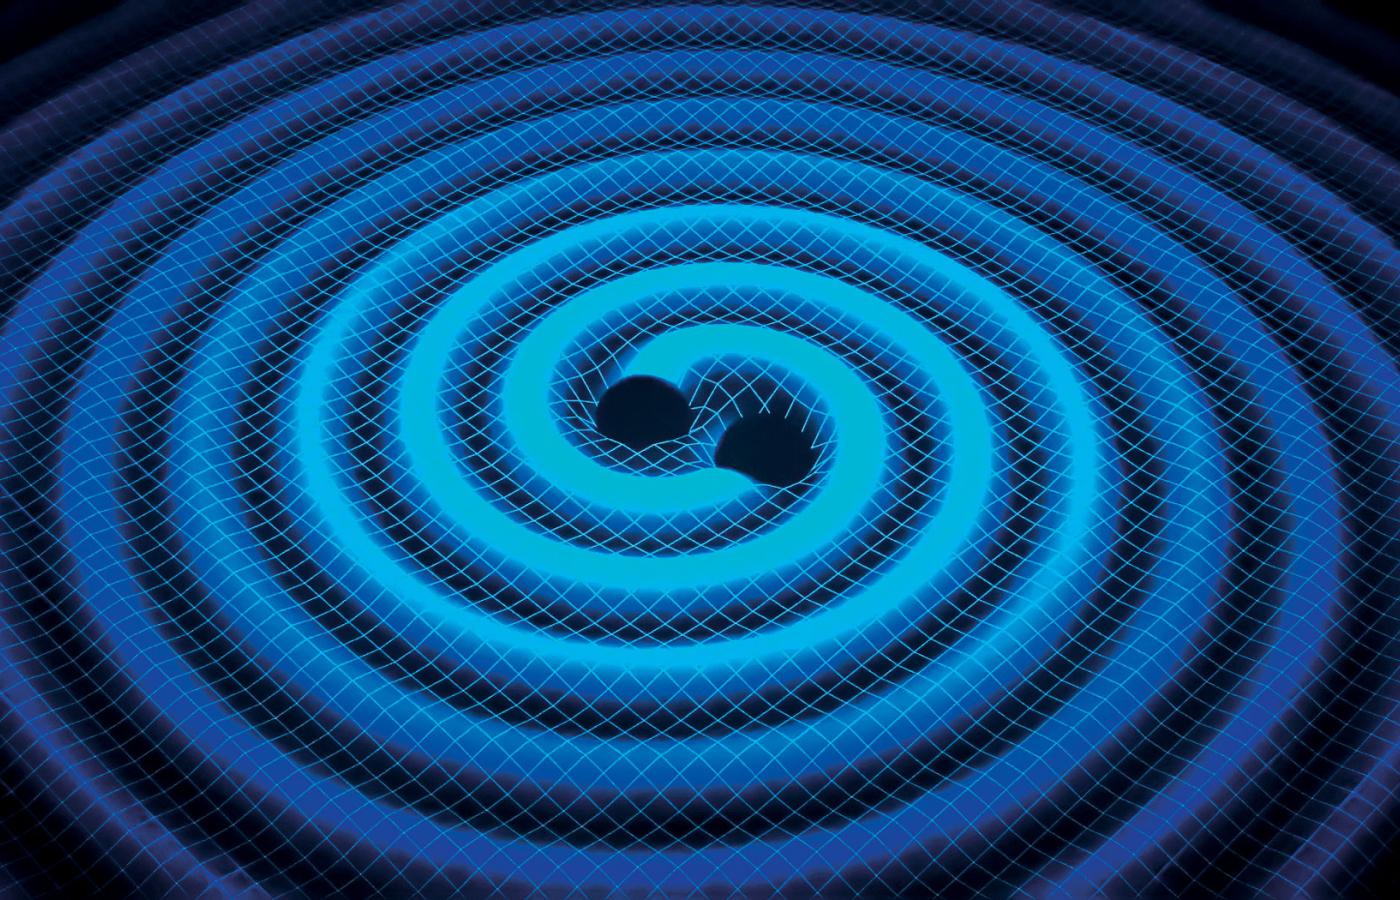 Tuż przed zderzeniem czarne dziury poruszały się z połową prędkości światła, 150 tys. km/s. Zjawisko nastąpiło w odległości 1,3 mld lat świetlnych od Ziemi (czyli miliard trzysta milionów lat temu). Wizualizacja fali grawitacyjnej.